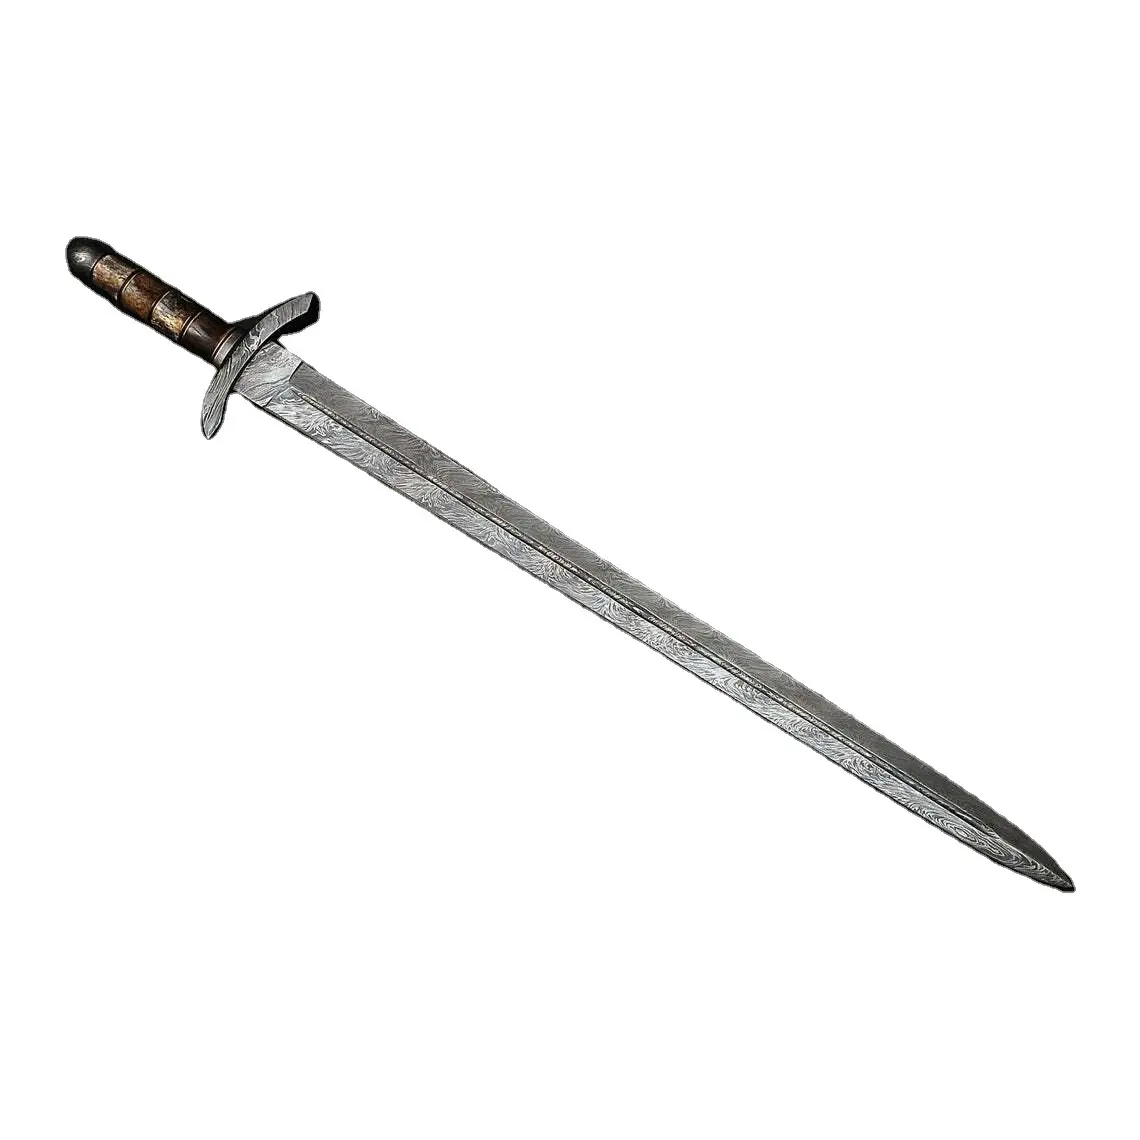 Оптовая продажа, меч из дамасской стали, высокое качество, ручка из розового дерева с кожаной оболочкой